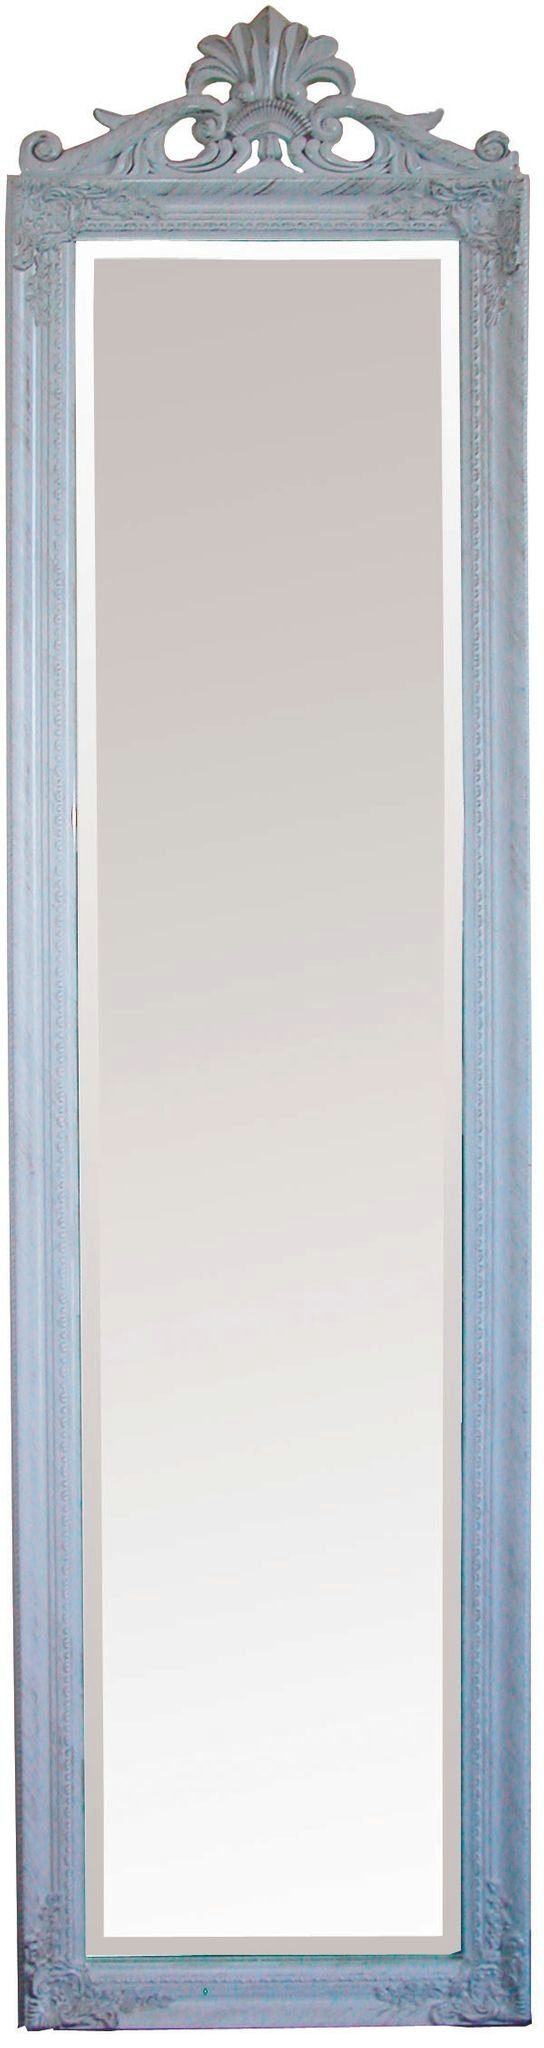 elbmöbel Standspiegel Standspiegel Standspiegel Spiegel: Barock weiß cm weiß 180x45x5 groß